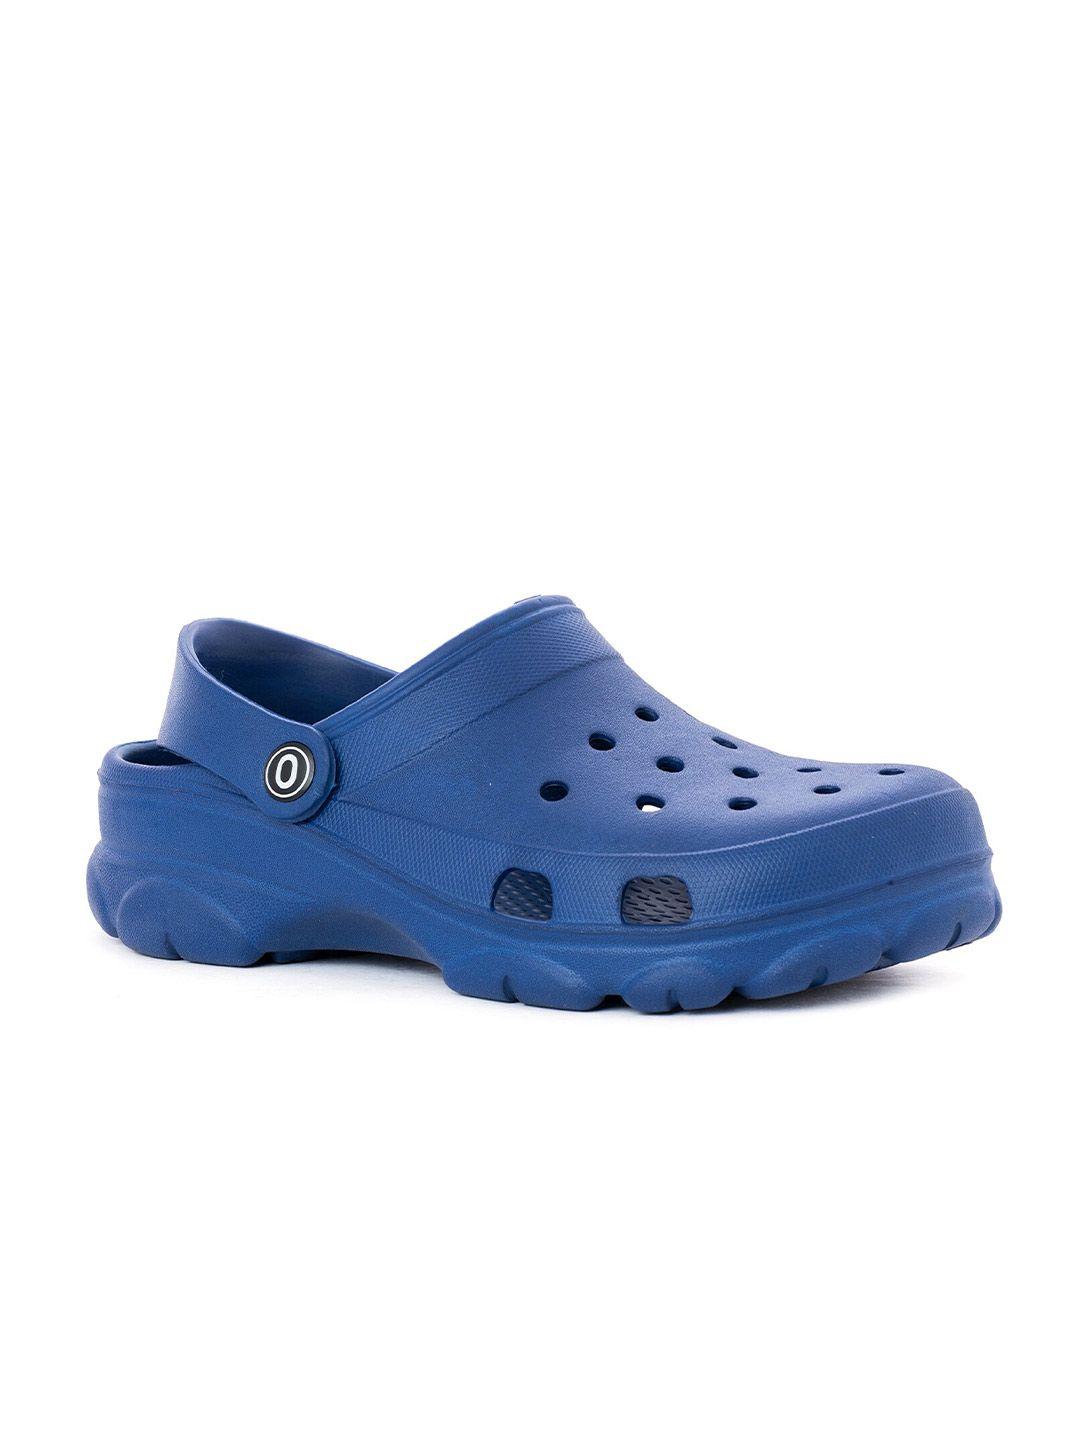 khadims men blue clogs sandals